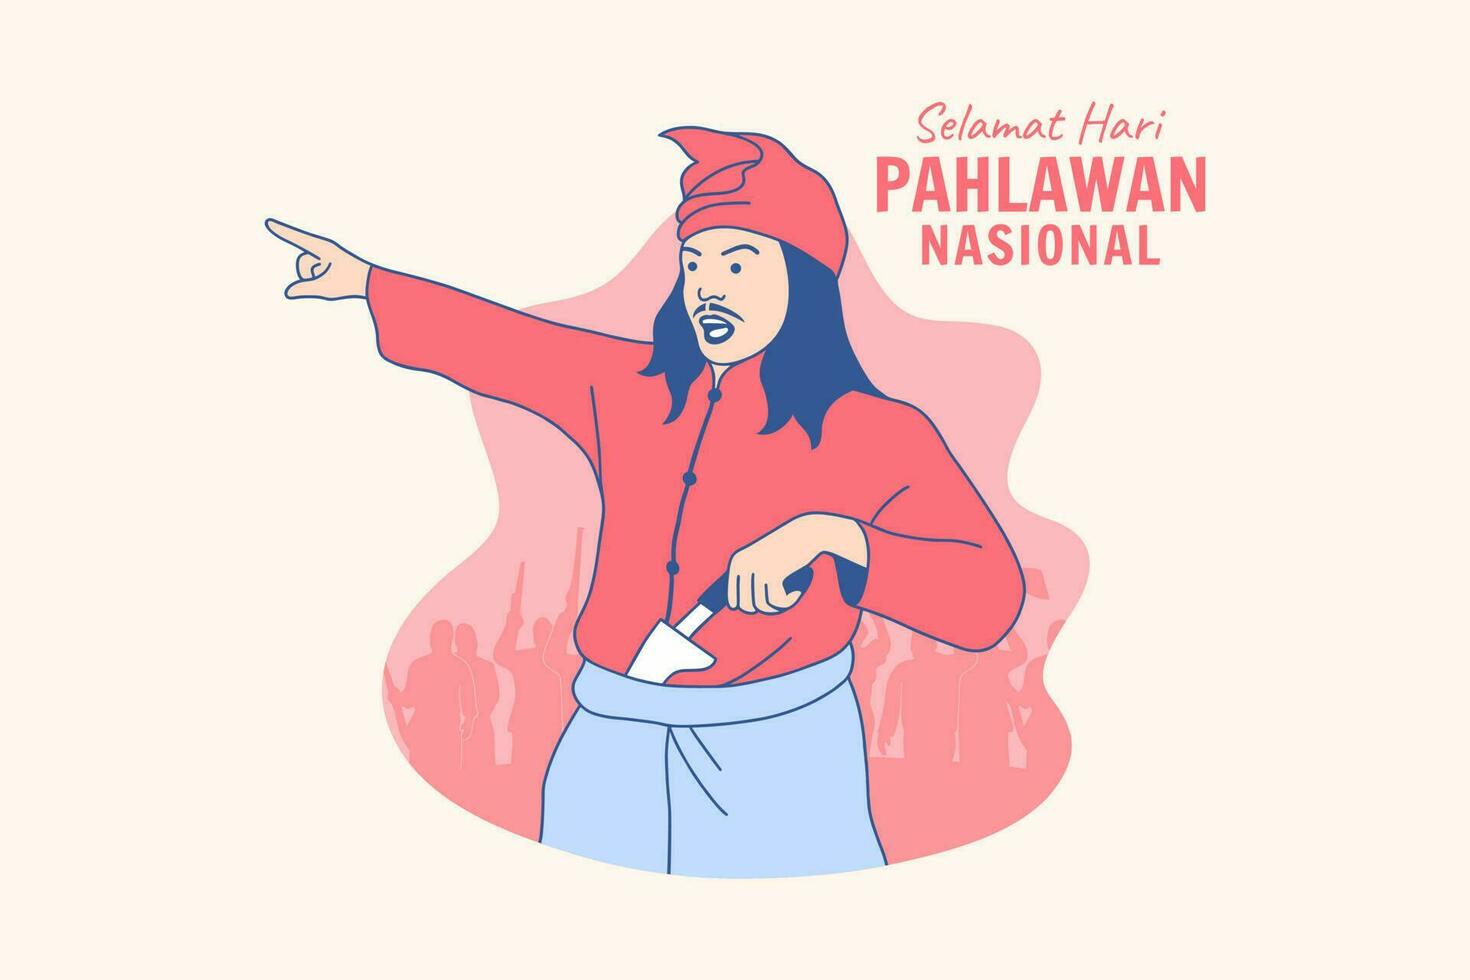 illustrationen indonesische helden für den indonesischen nationalheldentag hari pahlawan designkonzept vektor